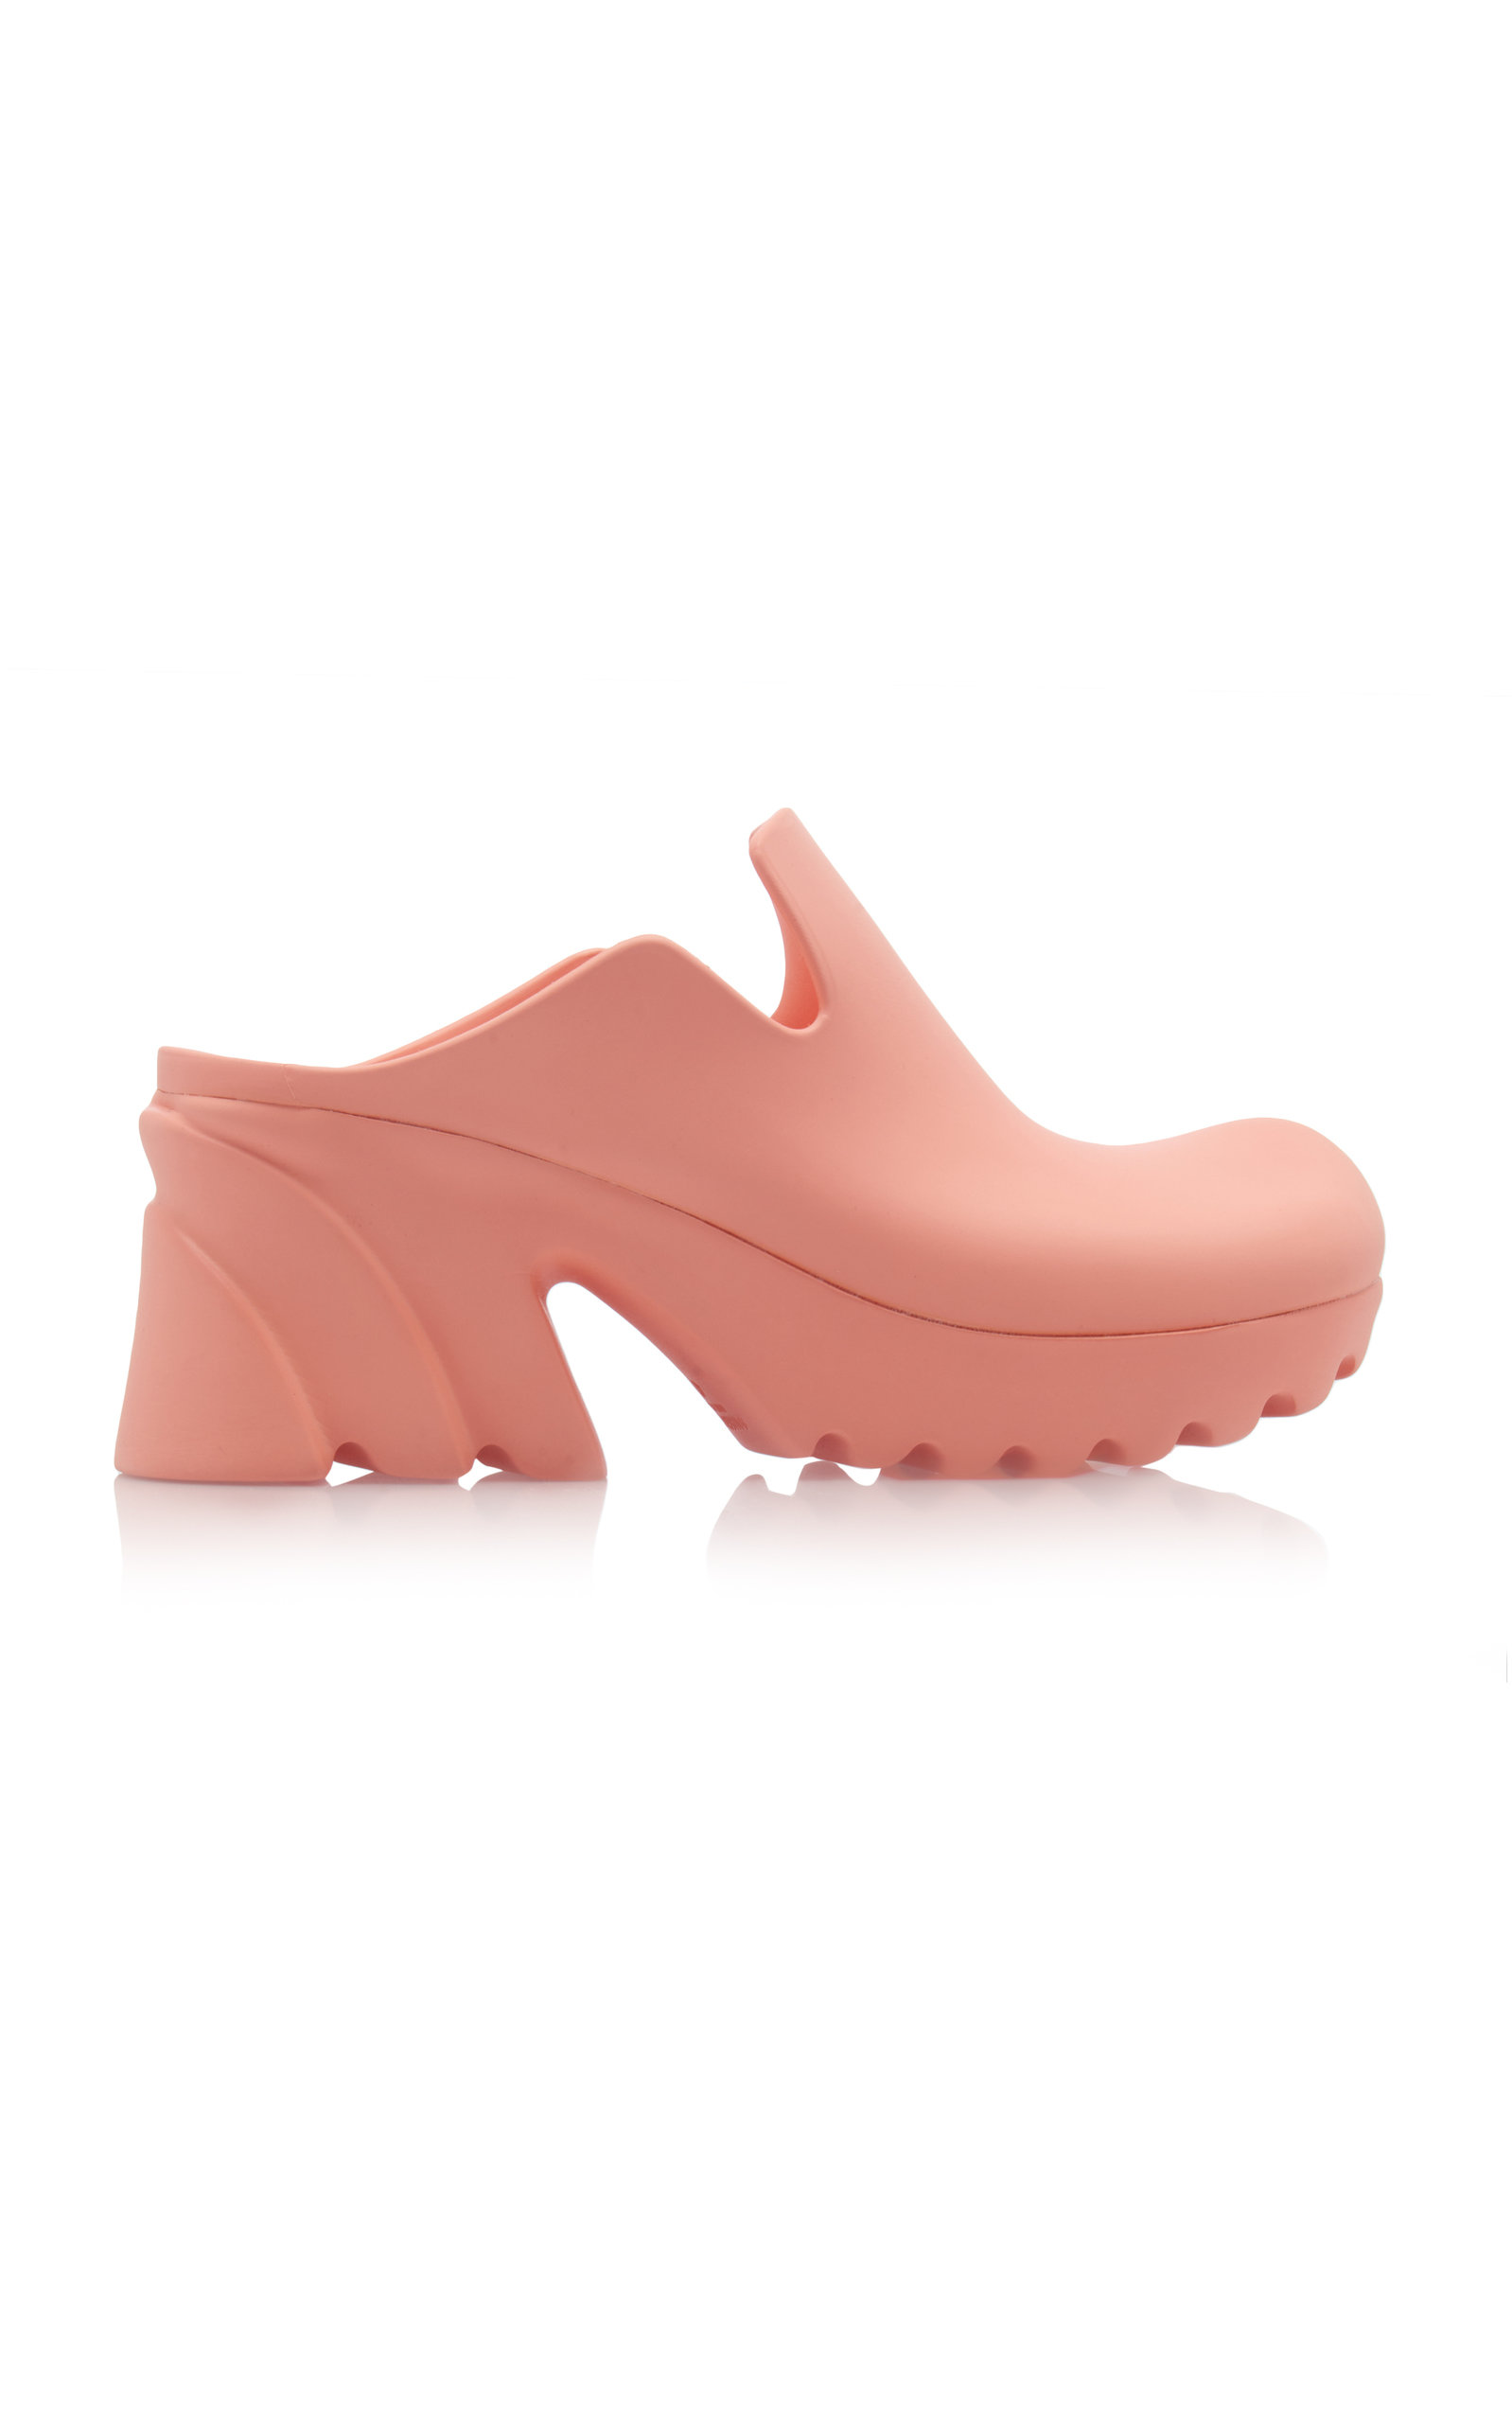 Bottega Veneta - Women's Rubber Flash Mules - Brown/pink - Moda Operandi